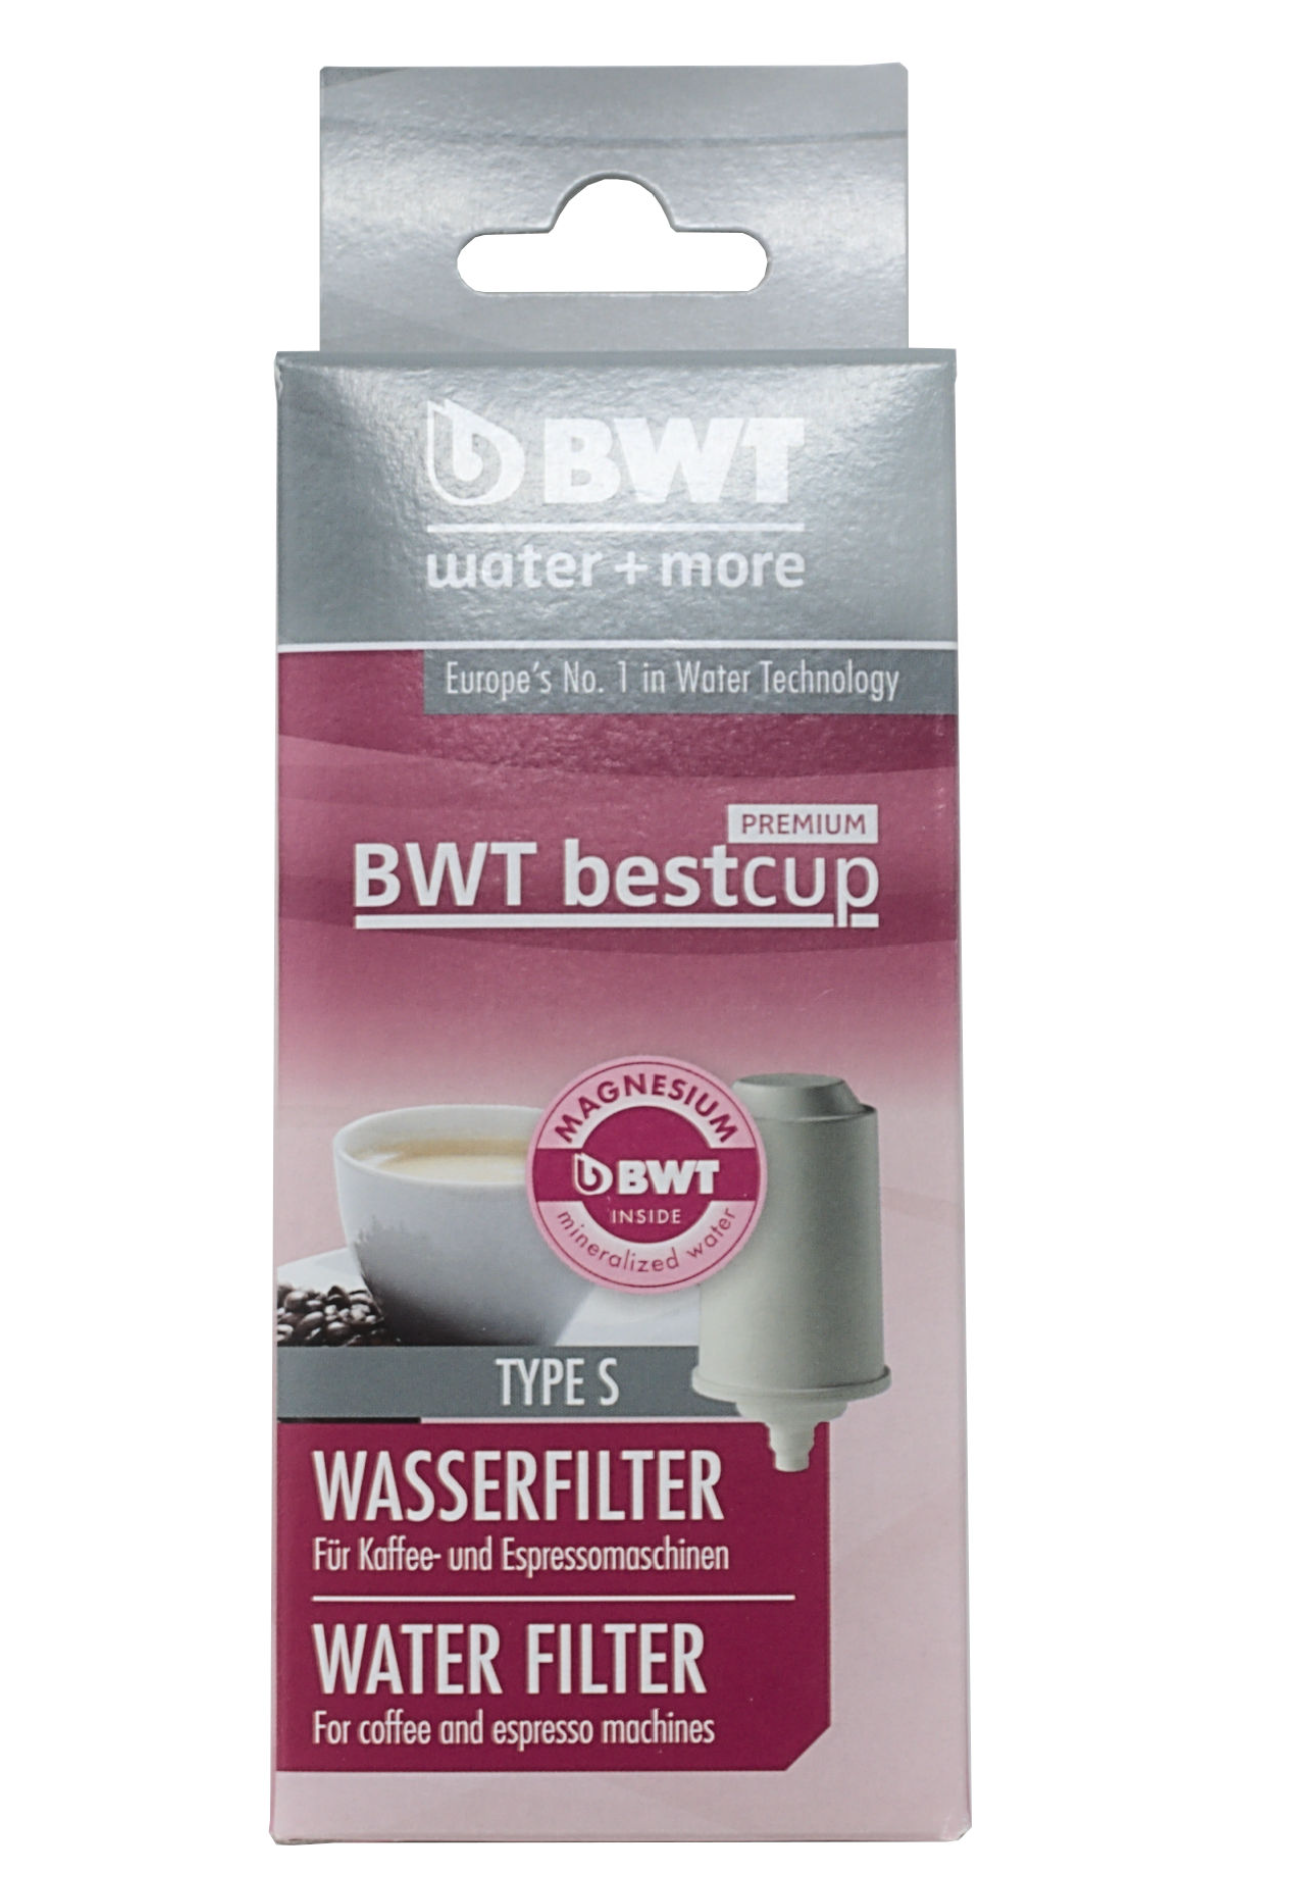 BWT Bestcup Premium Wasserfilter S